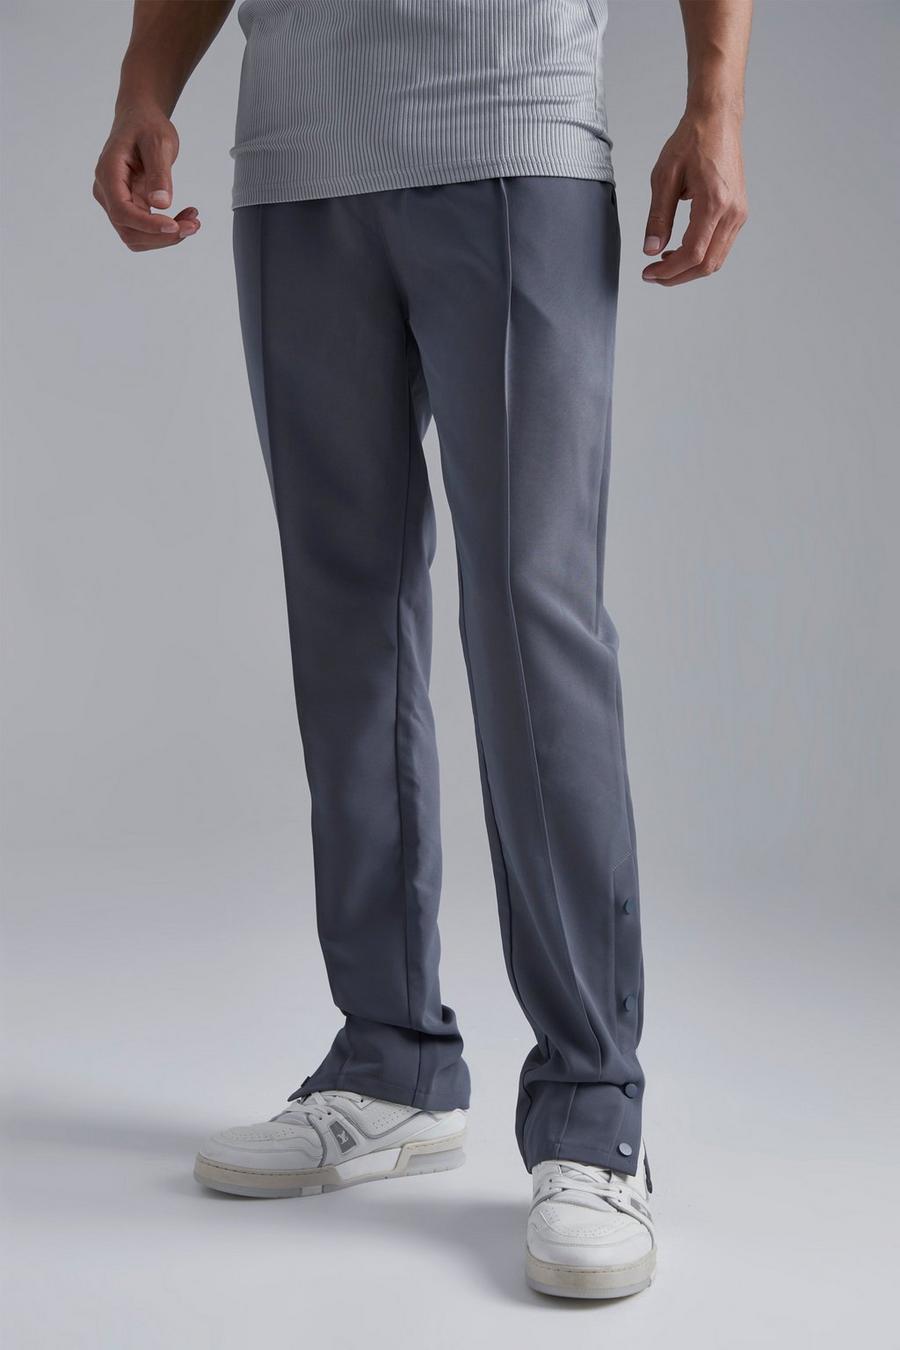 Pantaloni affusolati Tall con bottoni a pressione, Grey gris